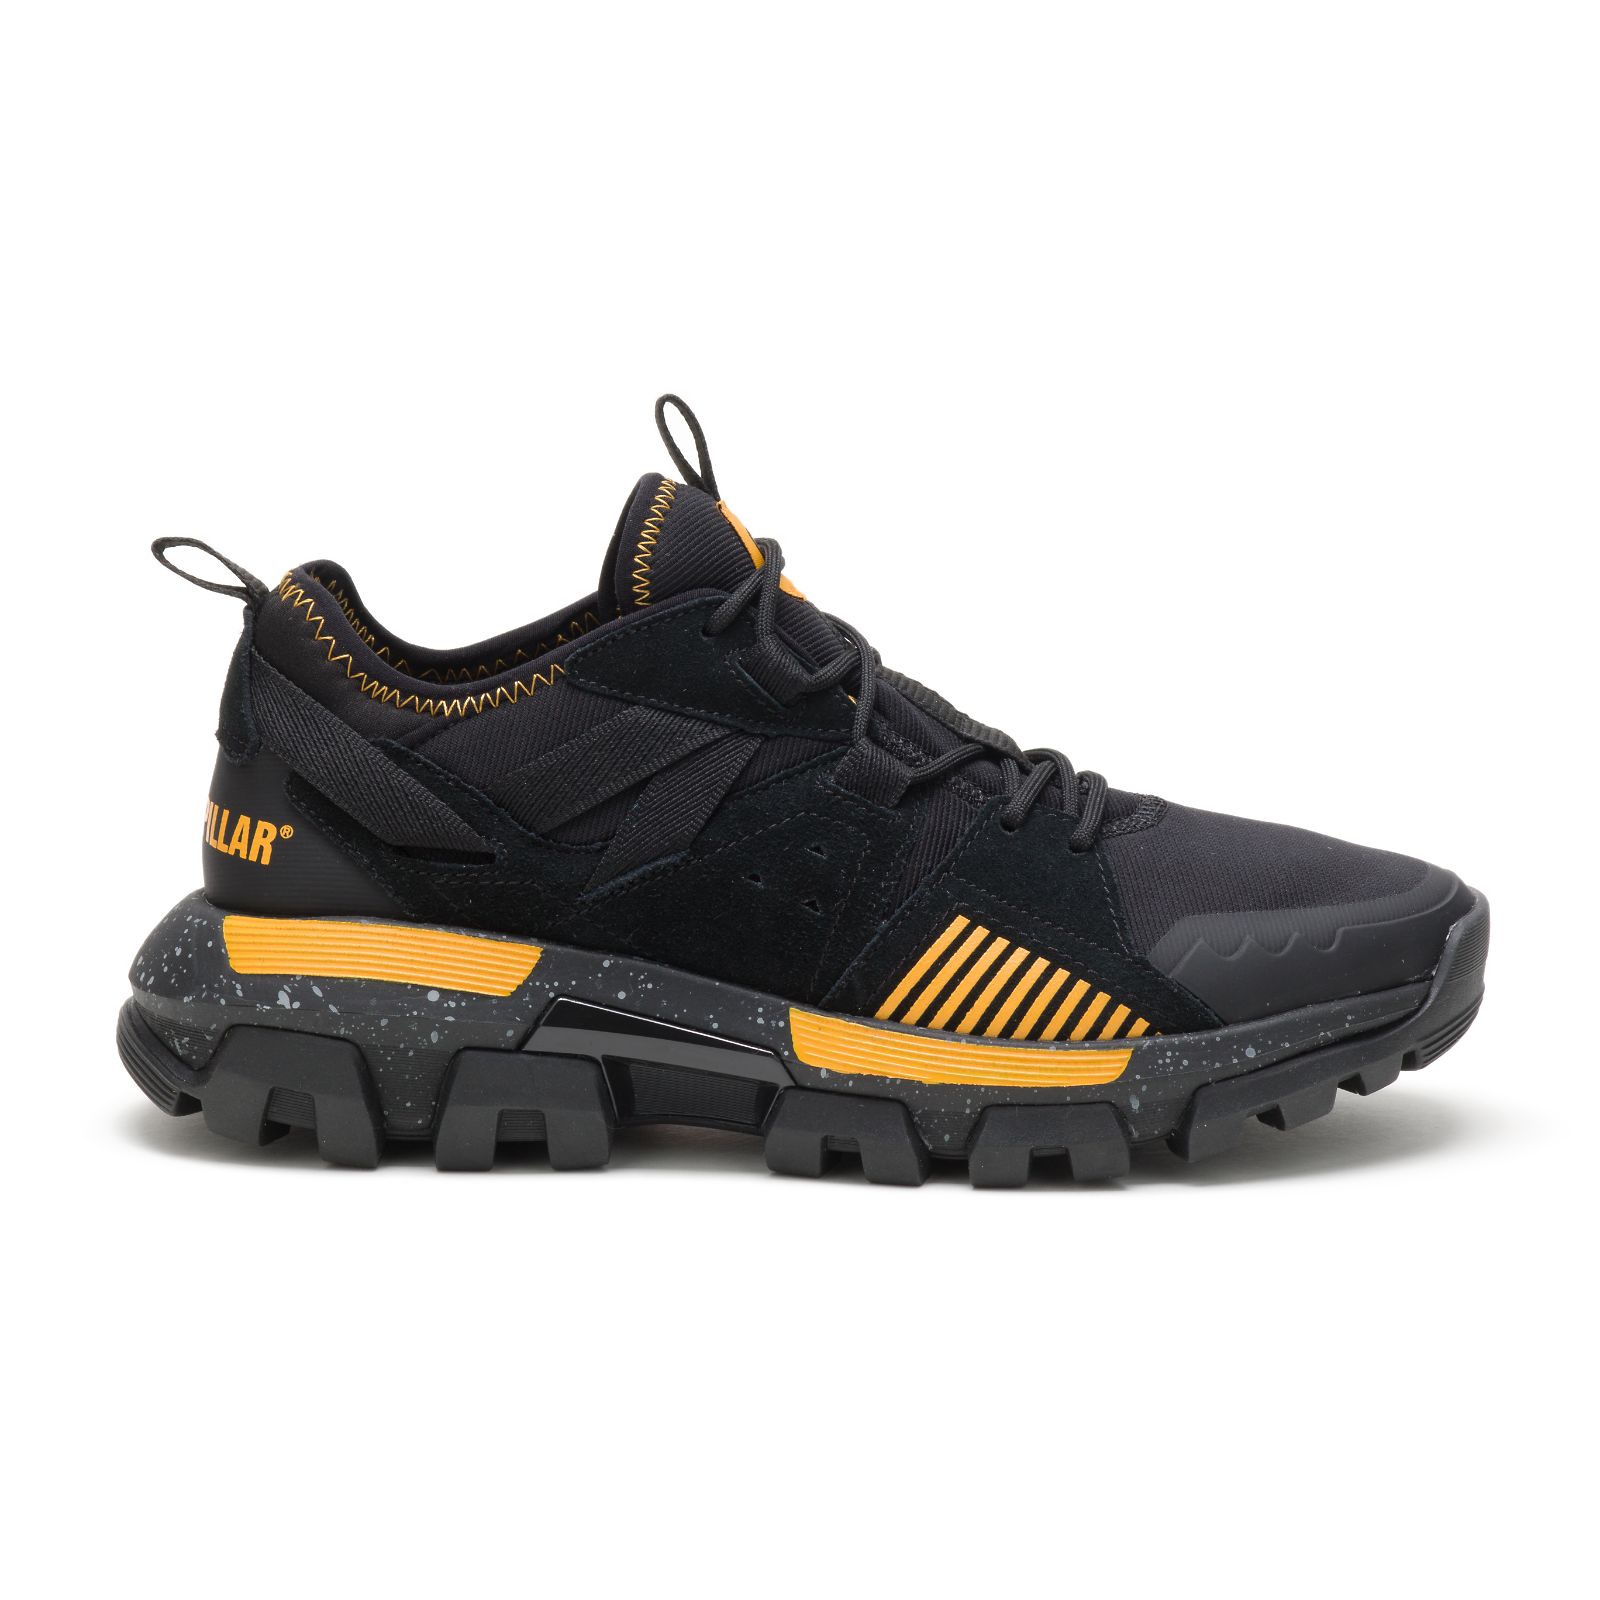 Caterpillar Raider Sport - Mens Sneakers - Black/Yellow - NZ (834LEOZXK)